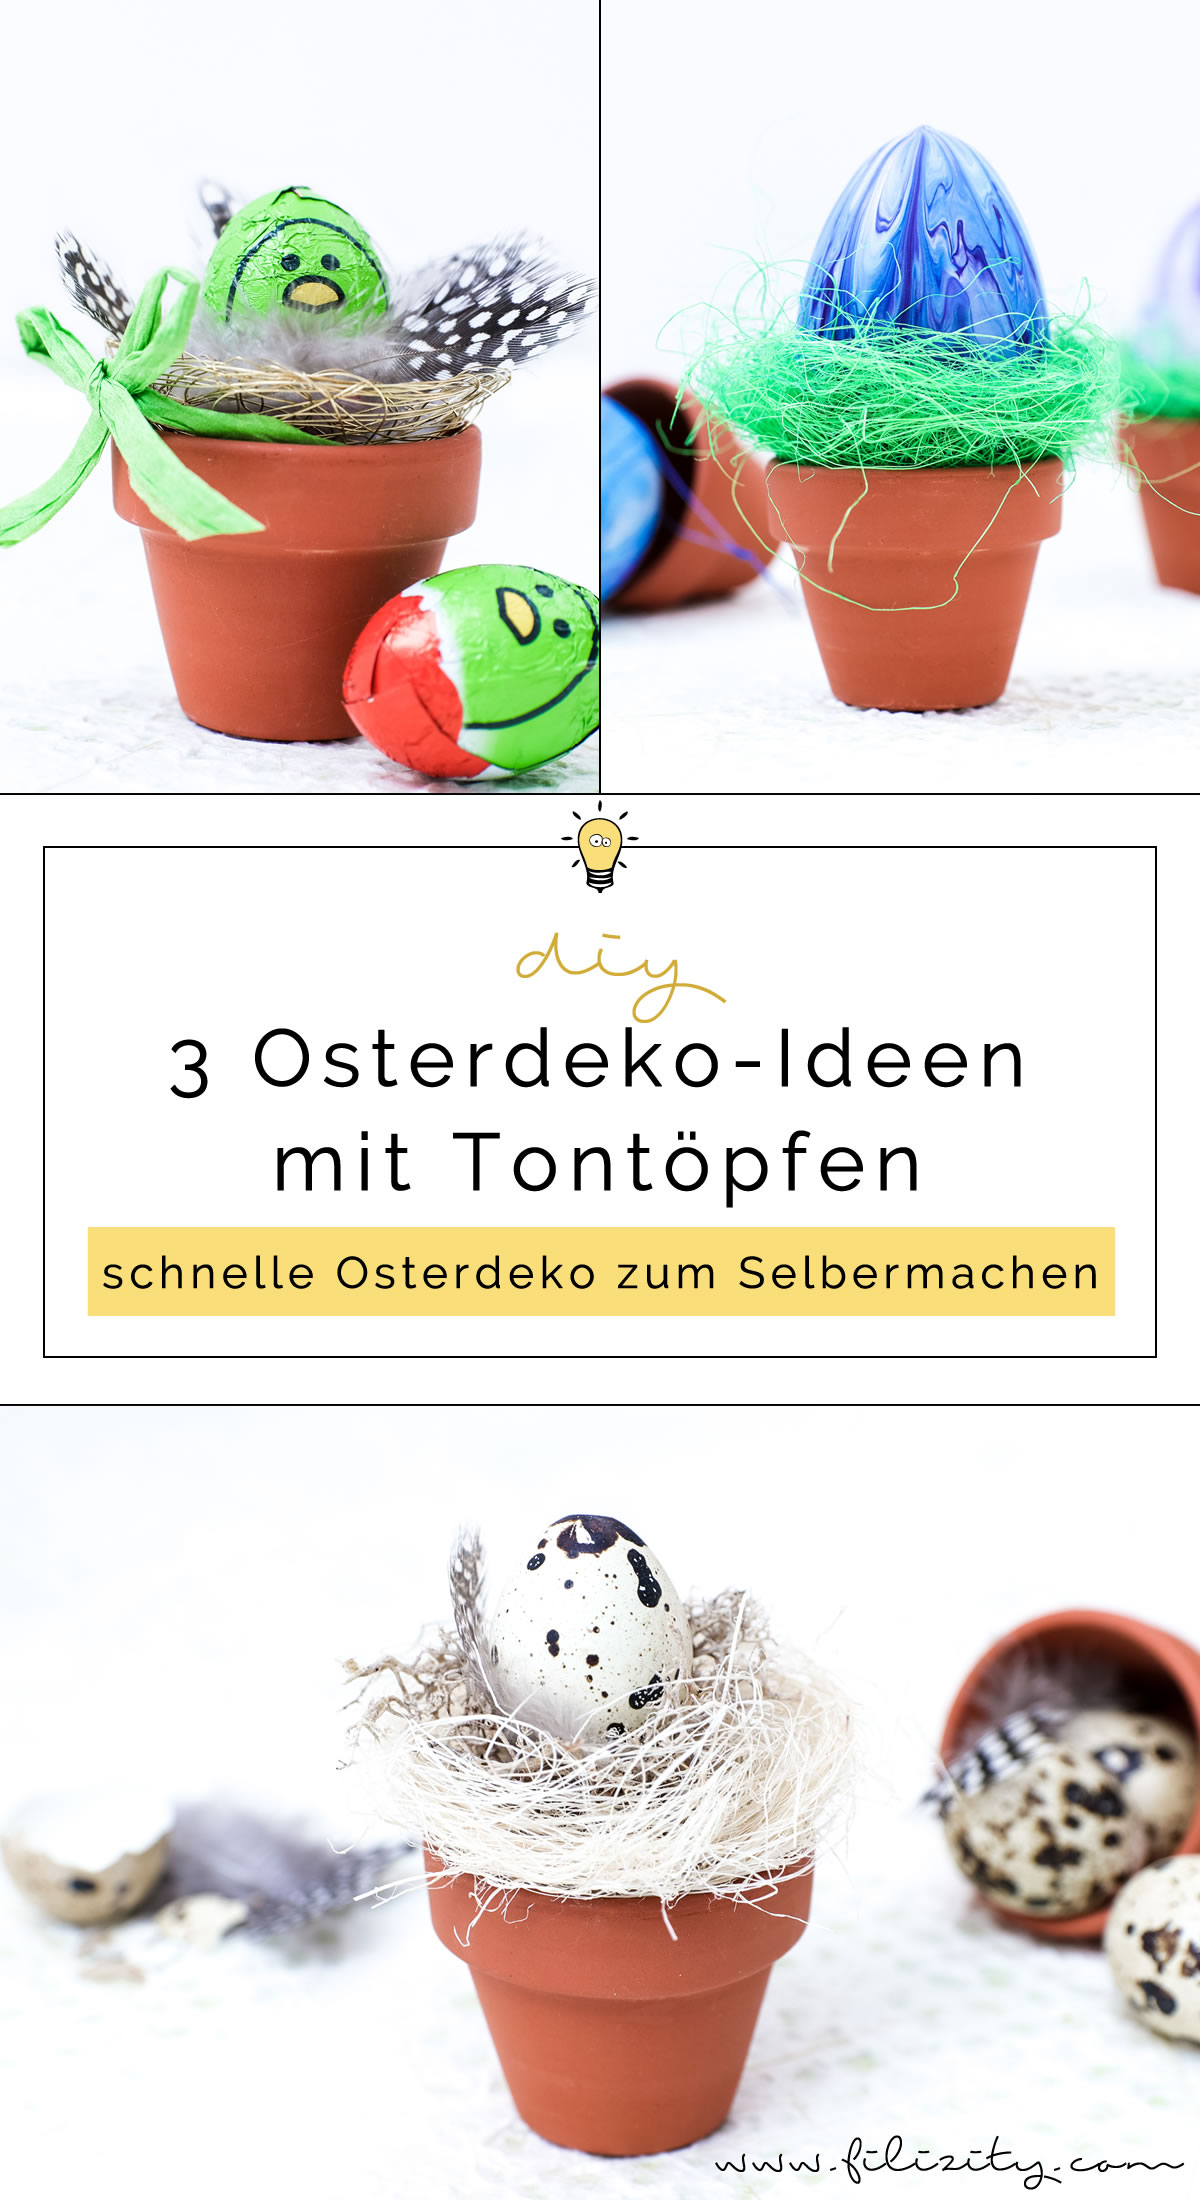 3 DIY Osterdeko Ideen mit Tontöpfen zum Selbermachen | Osterdeko mit Wachtelei, Federn, Schoko-Eiern und Drahtkorb | Filizity.com | DIY & Interior-Blog aus dem Rheinland #ostern #osterdeko